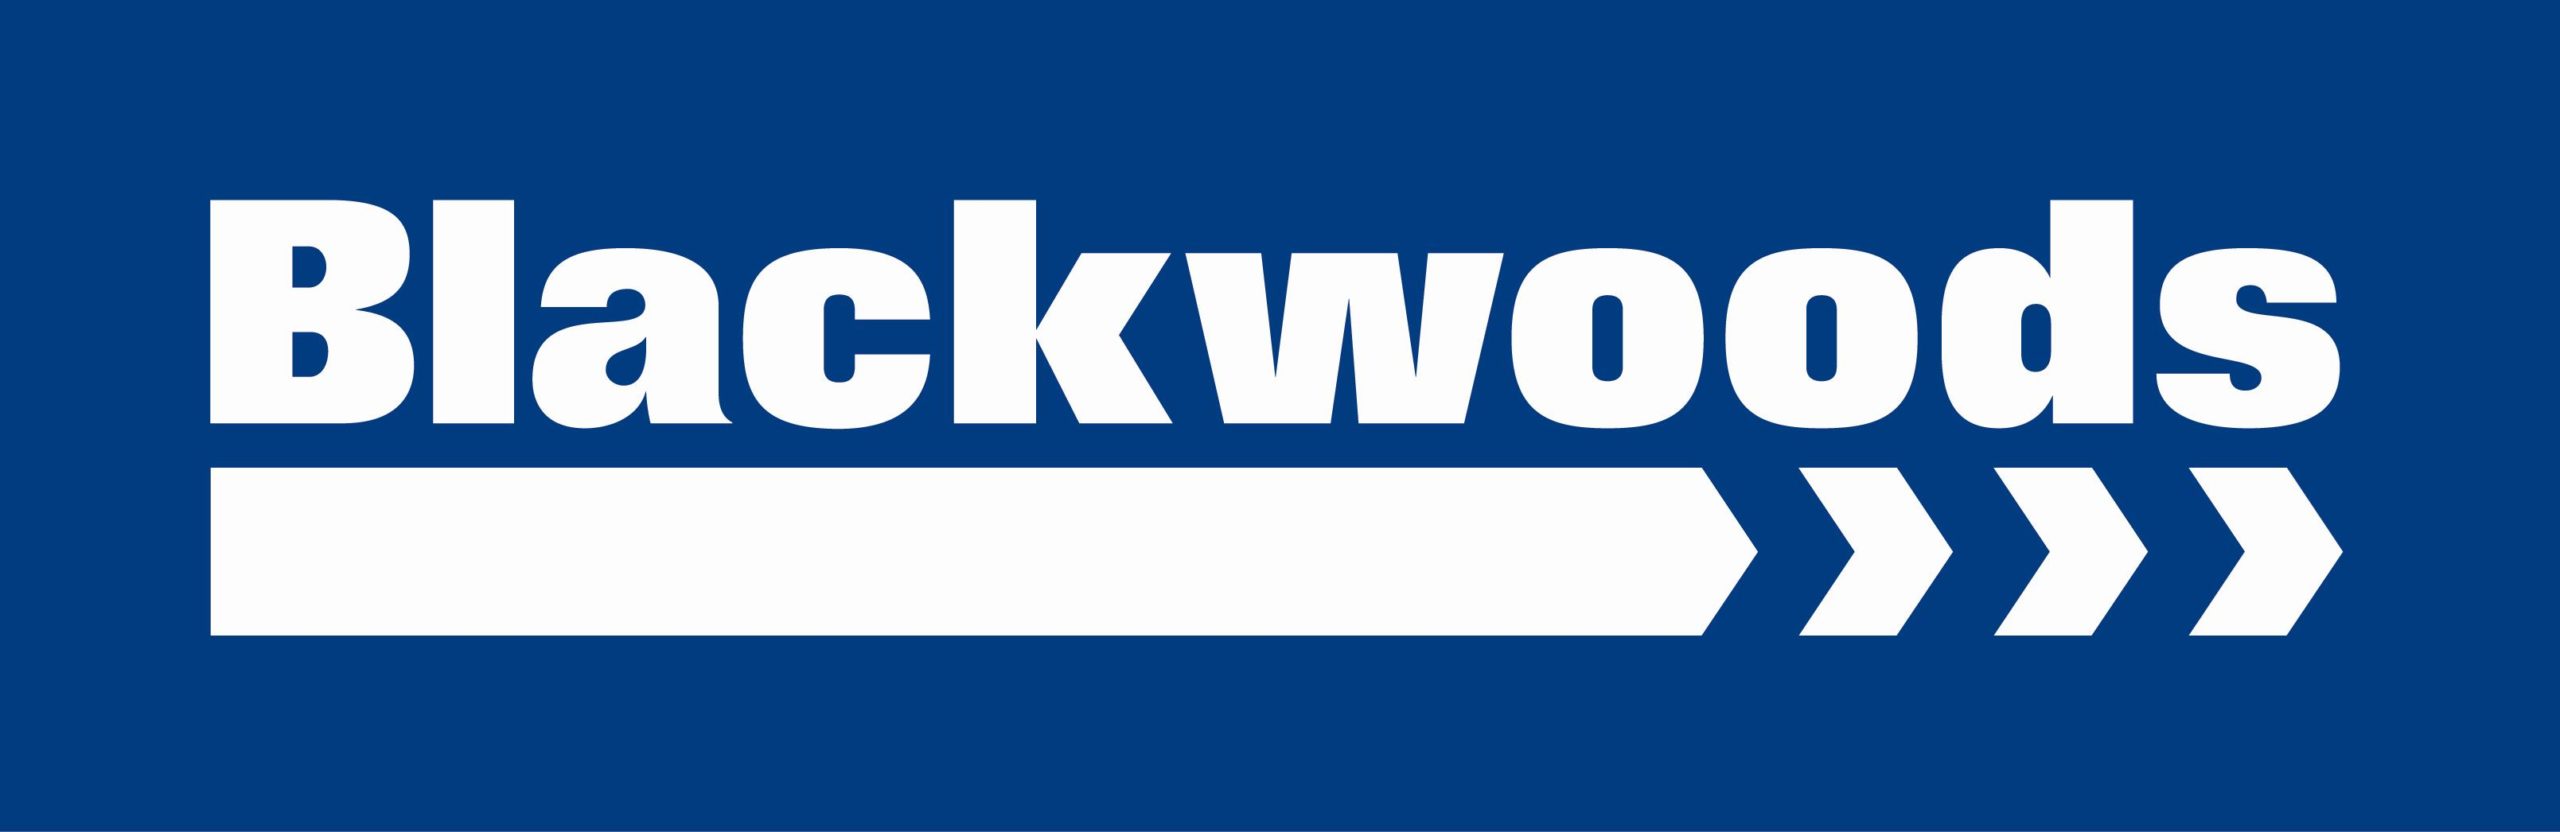 blackwoods-logo-scaled